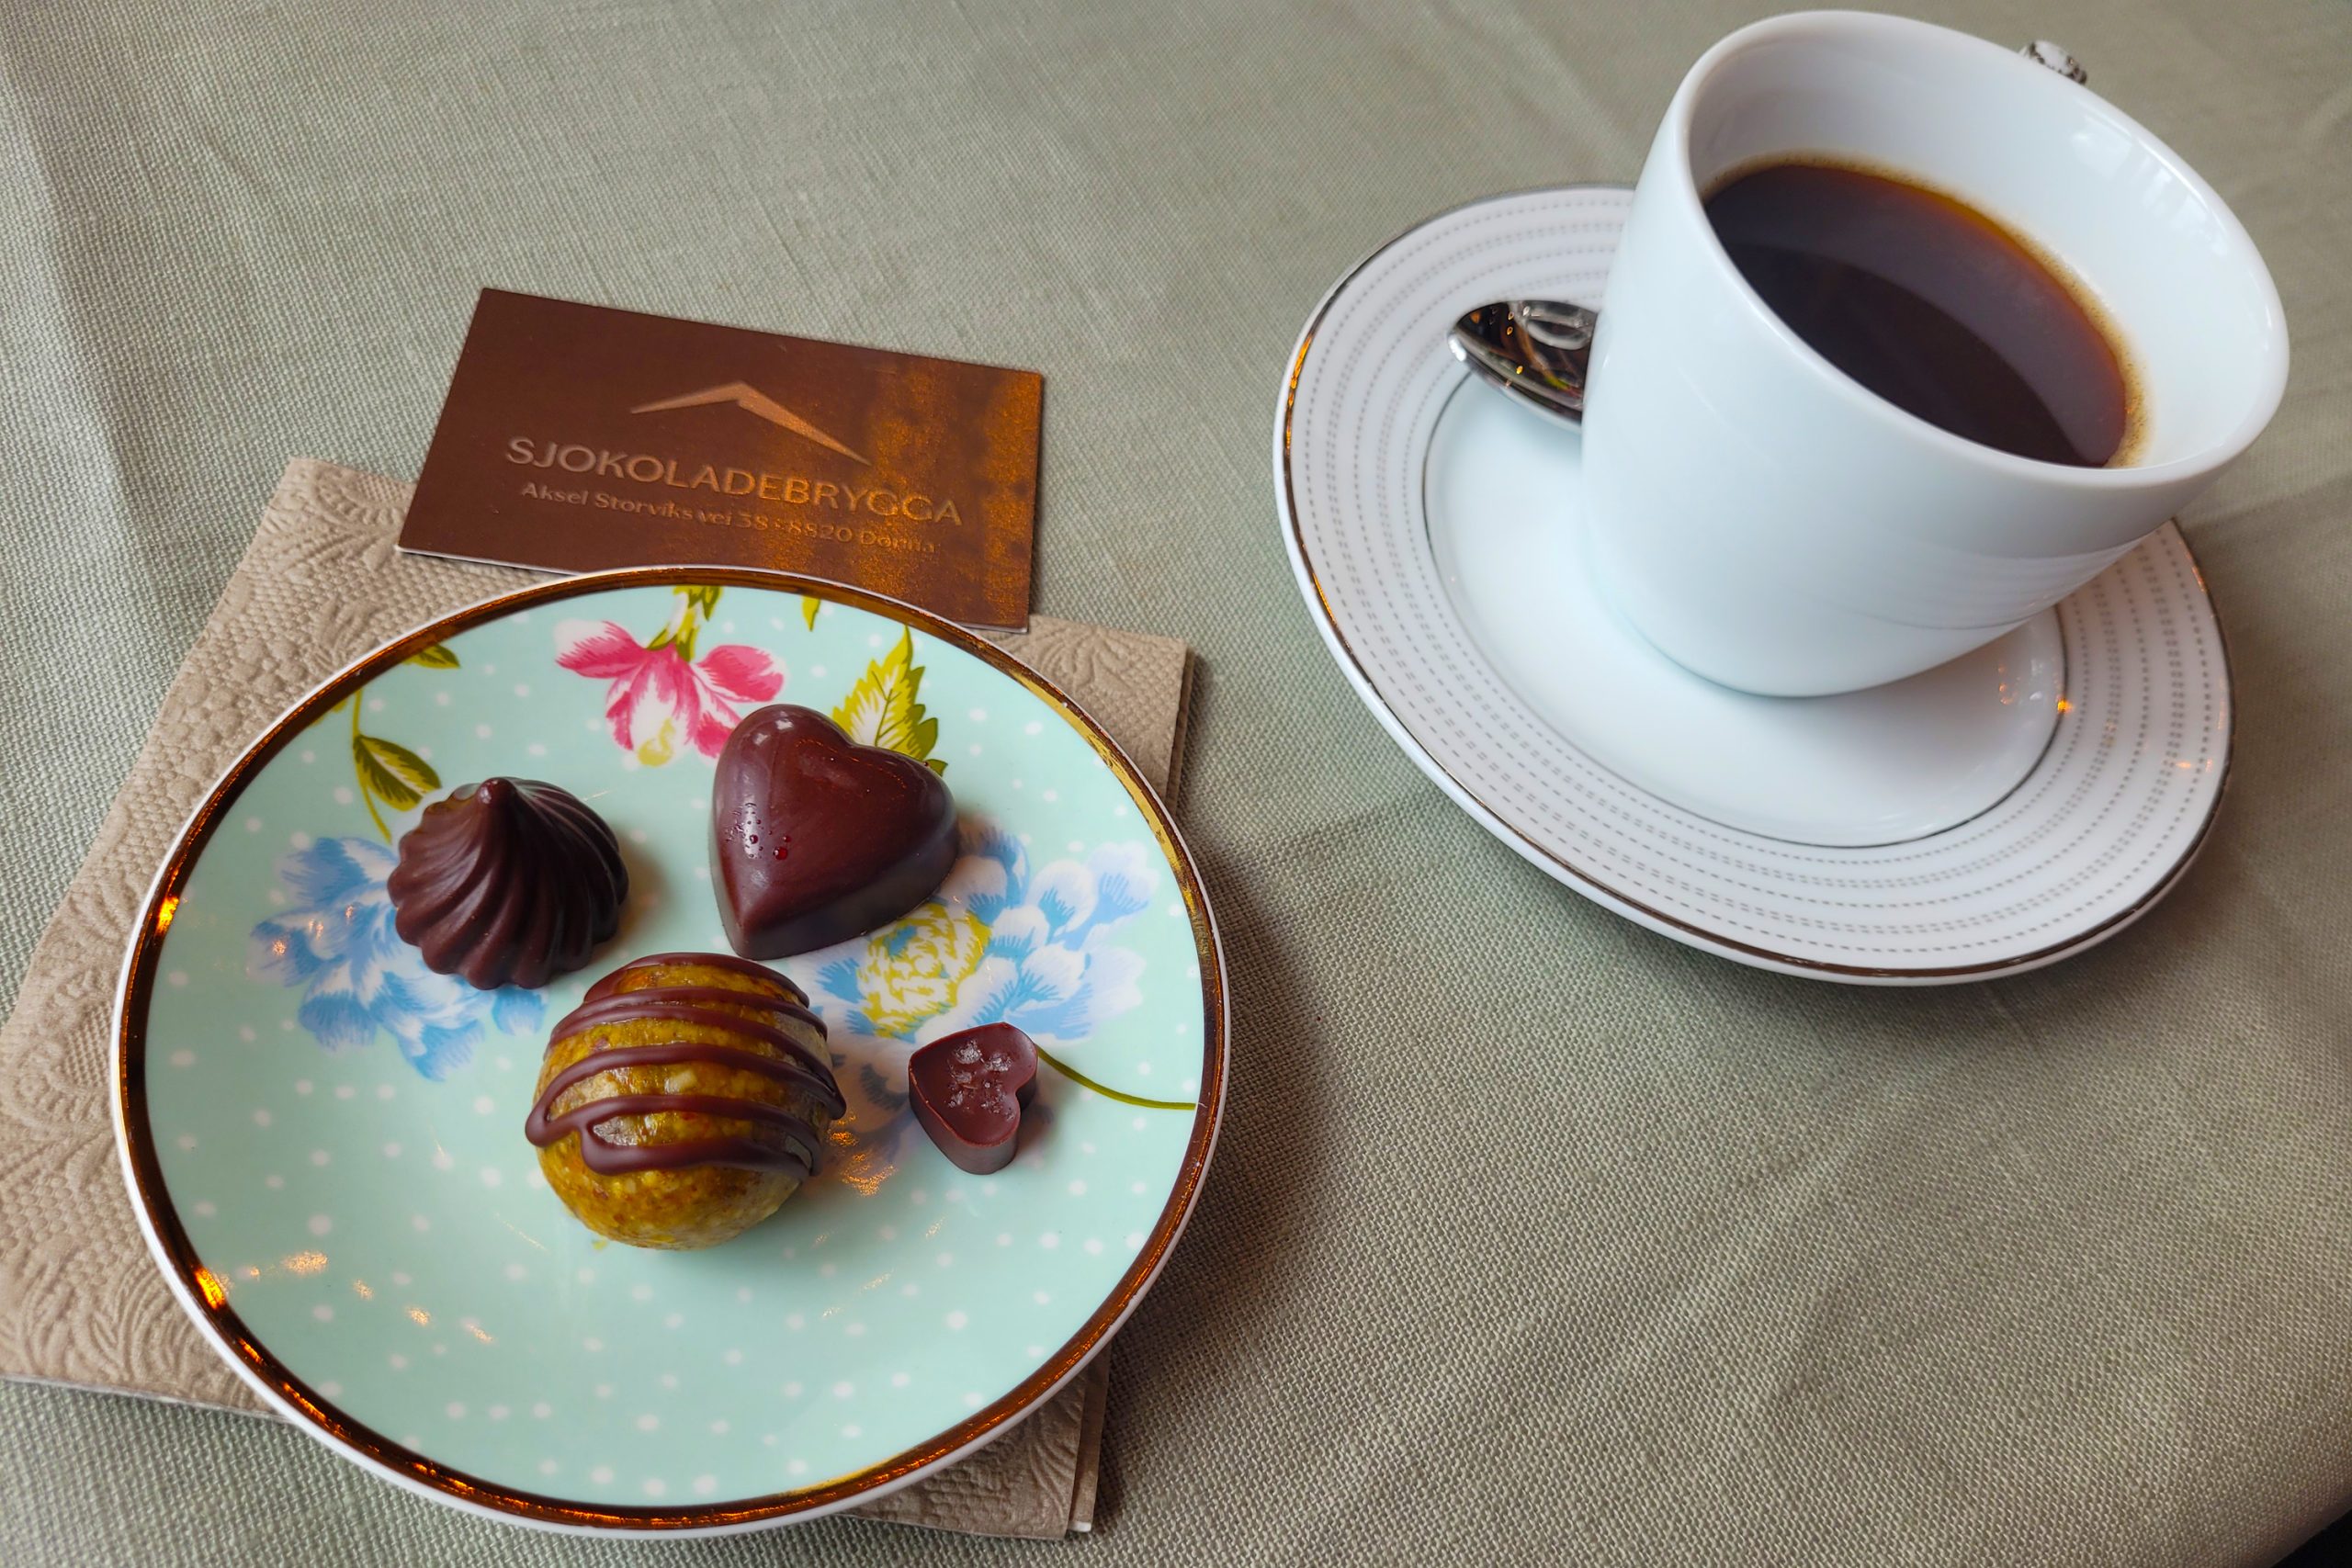 Sjokolade og kaffe fra Sjokoladebrygga